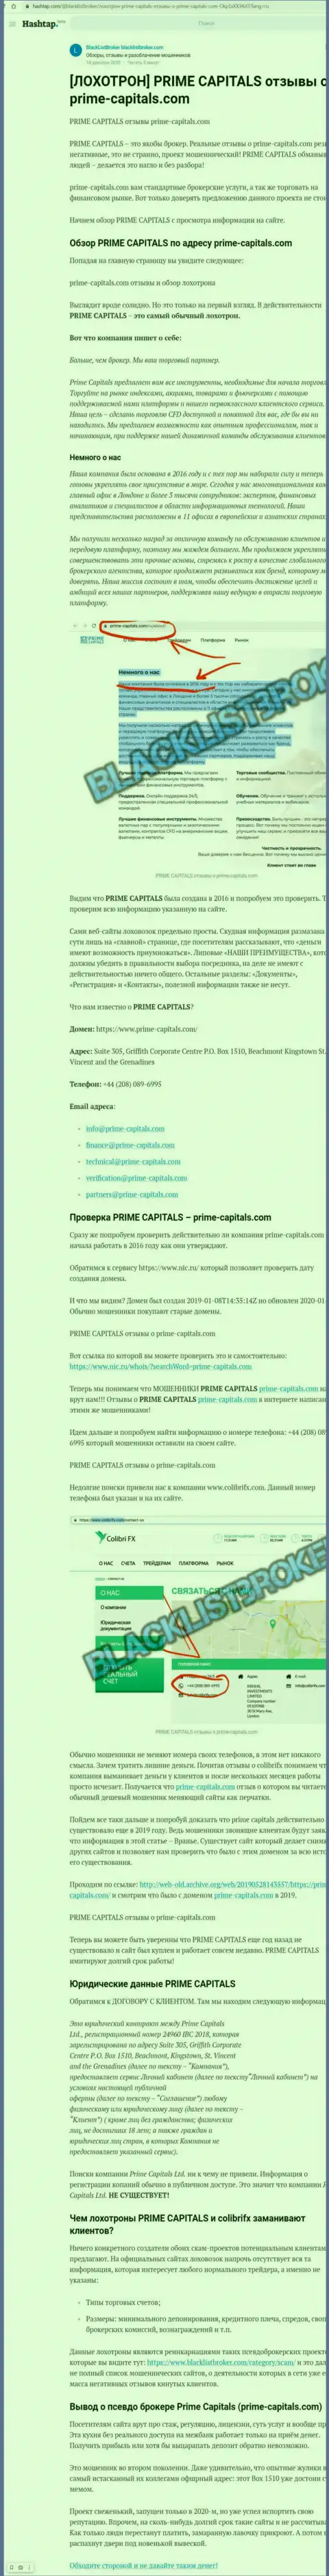 Prime Capitals - это наглый грабеж клиентов (обзорная статья противоправных деяний)